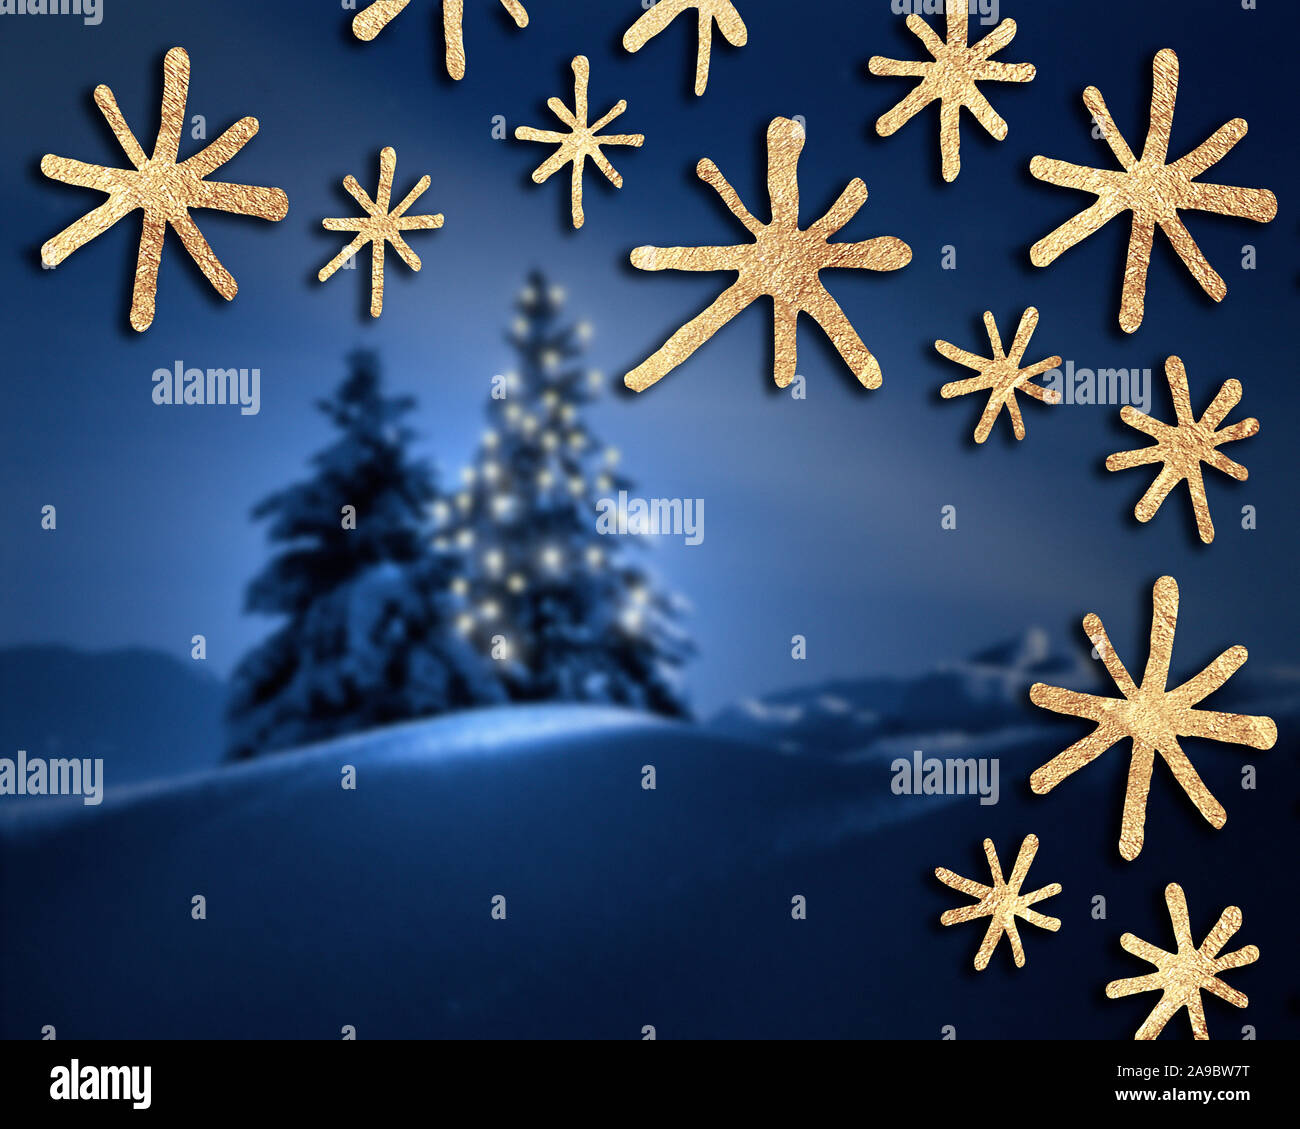 Weihnachten KONZEPT: Grußkarten-Design Stockfoto